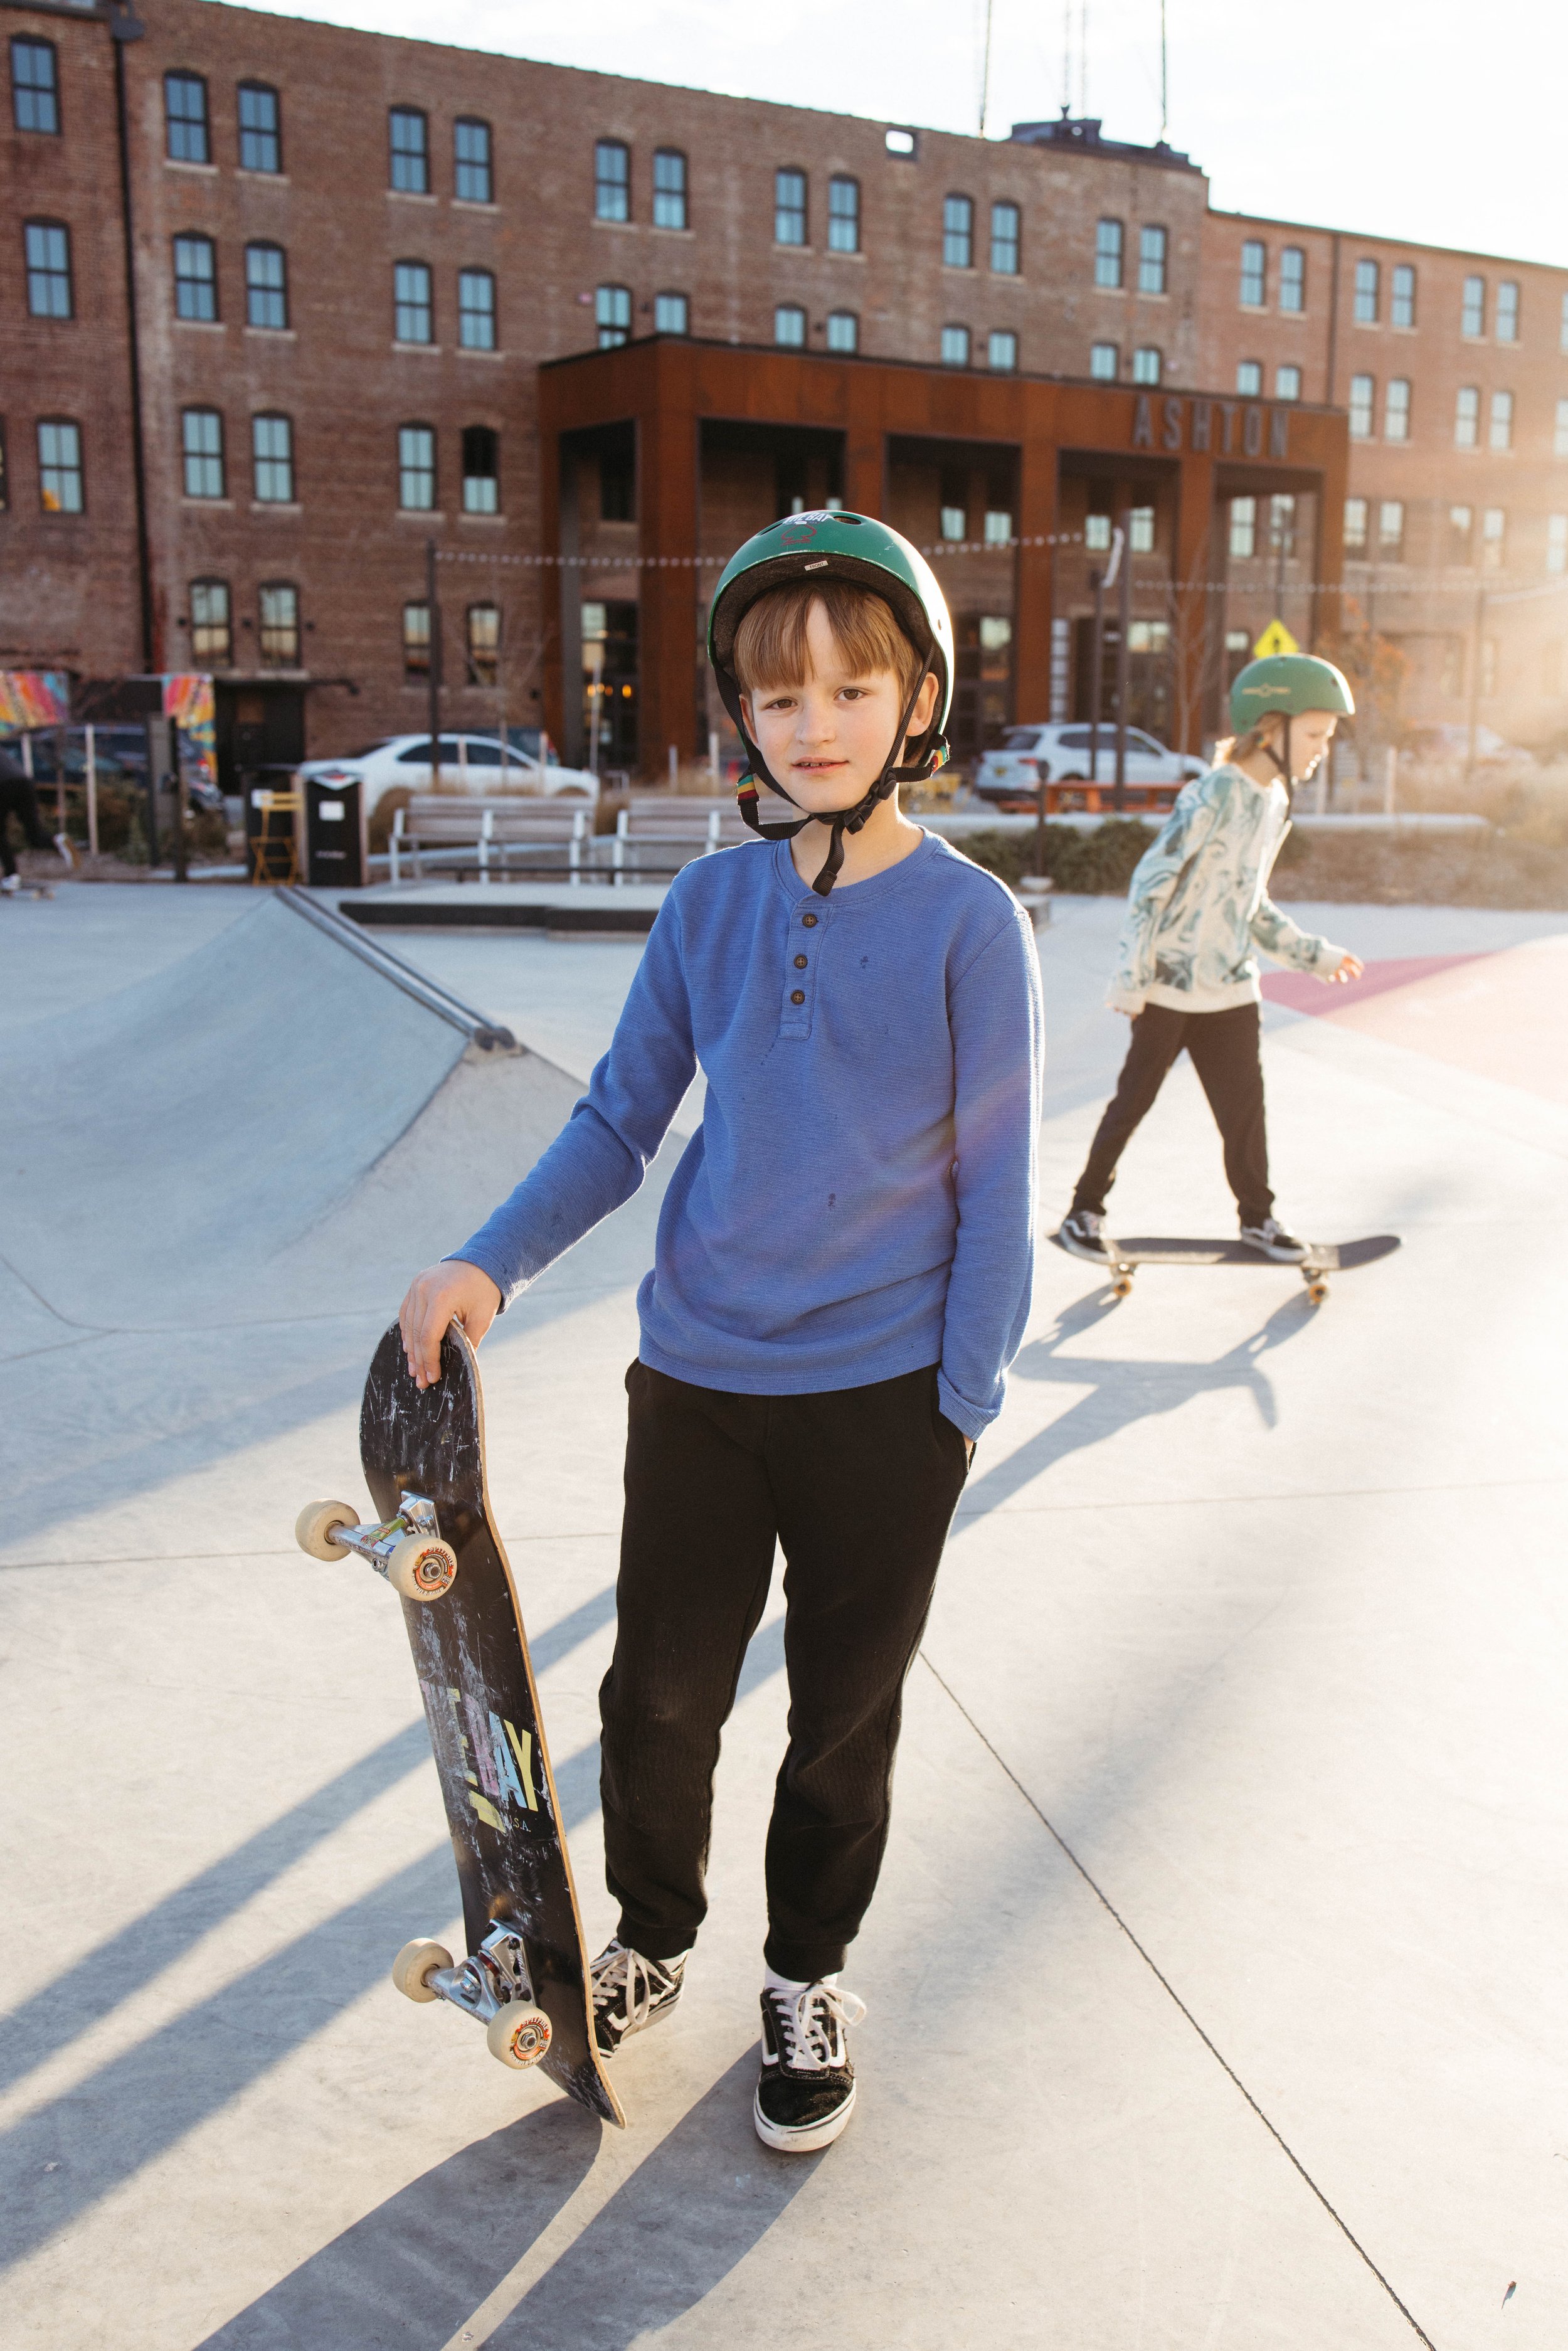 skate-park-family-session-web-res-102.jpg